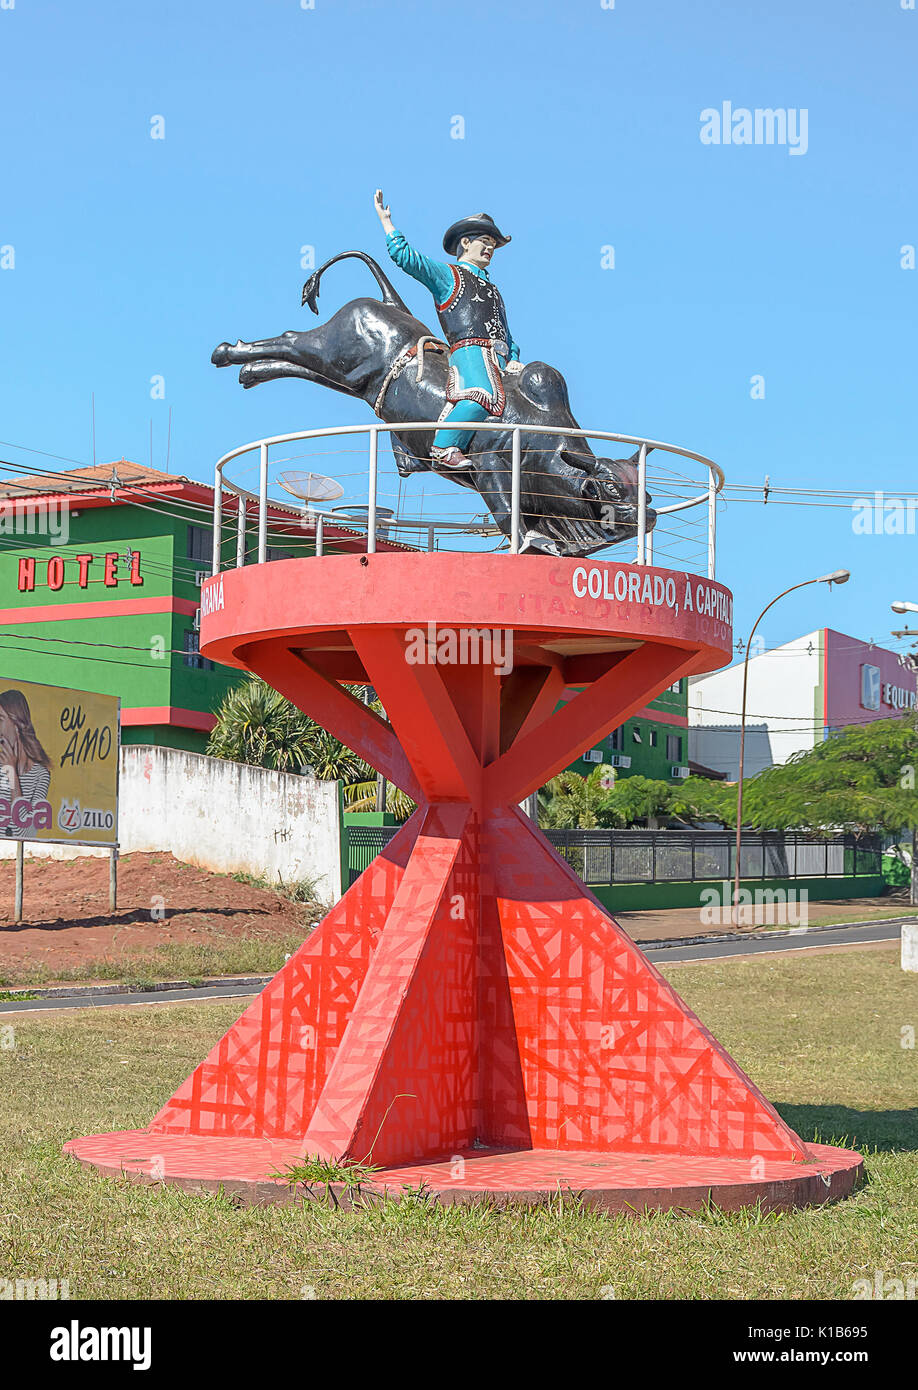 Colorado, Brésil - Juillet 22, 2017 : Statue d'un rodeo cowboy monté sur un taureau rouge sur une structure. Vue sur l'entrée de la ville Colorado - Paran Banque D'Images